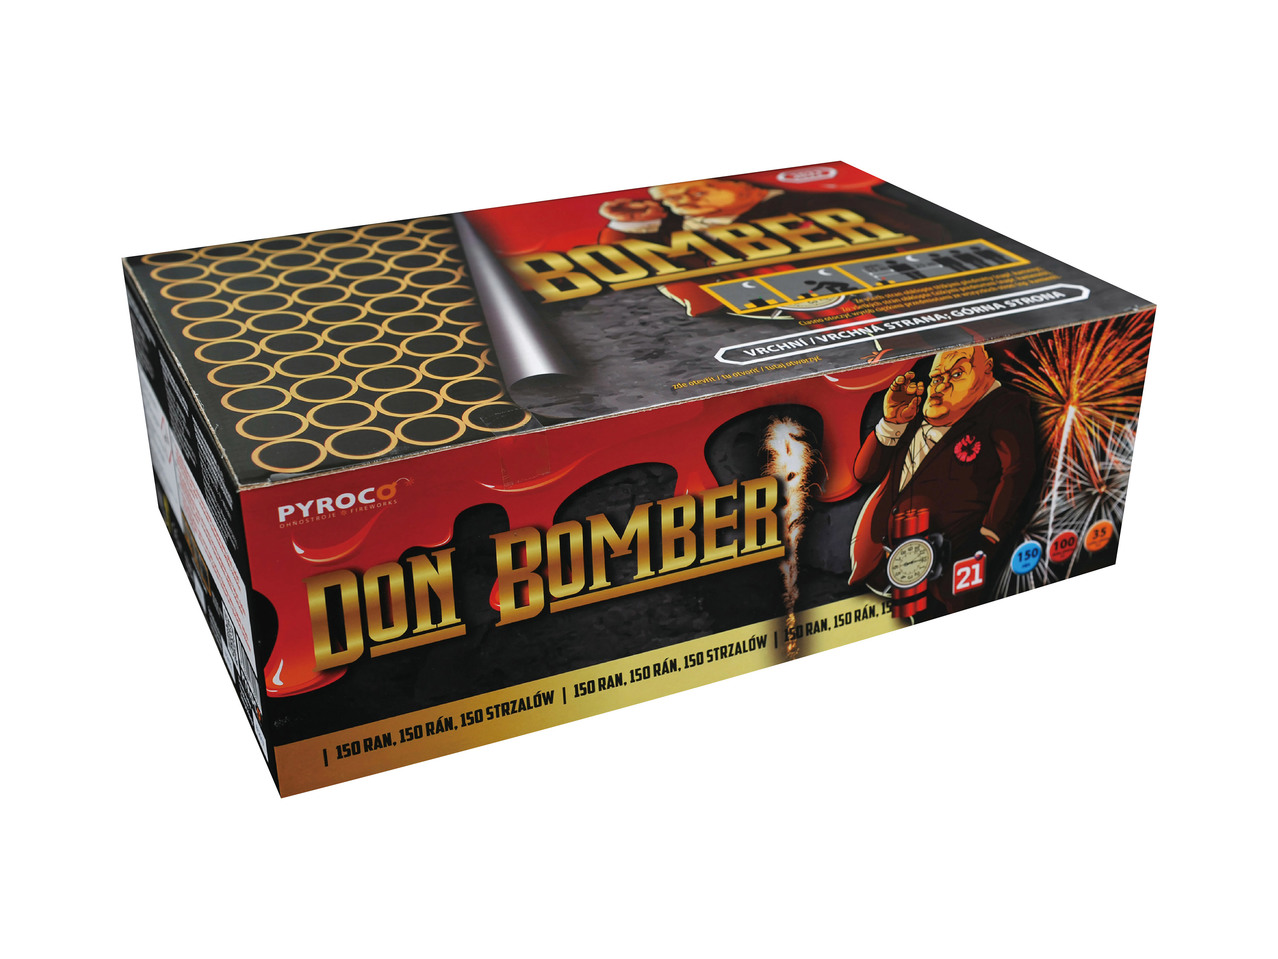 Don Bomber